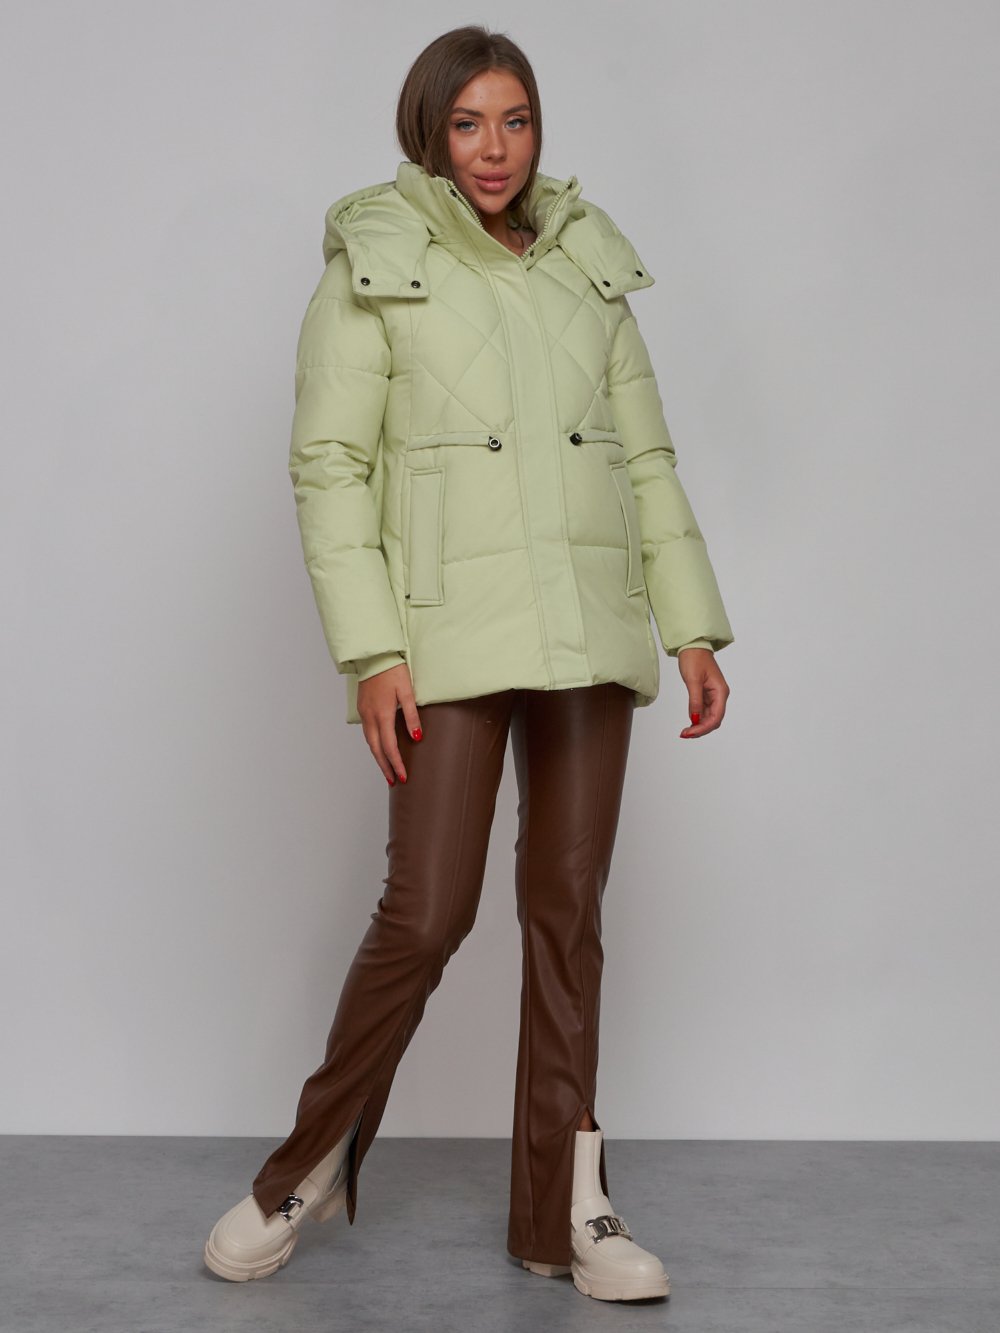 Купить куртку зимнюю оптом от производителя недорого в Москве 52302Sl 1